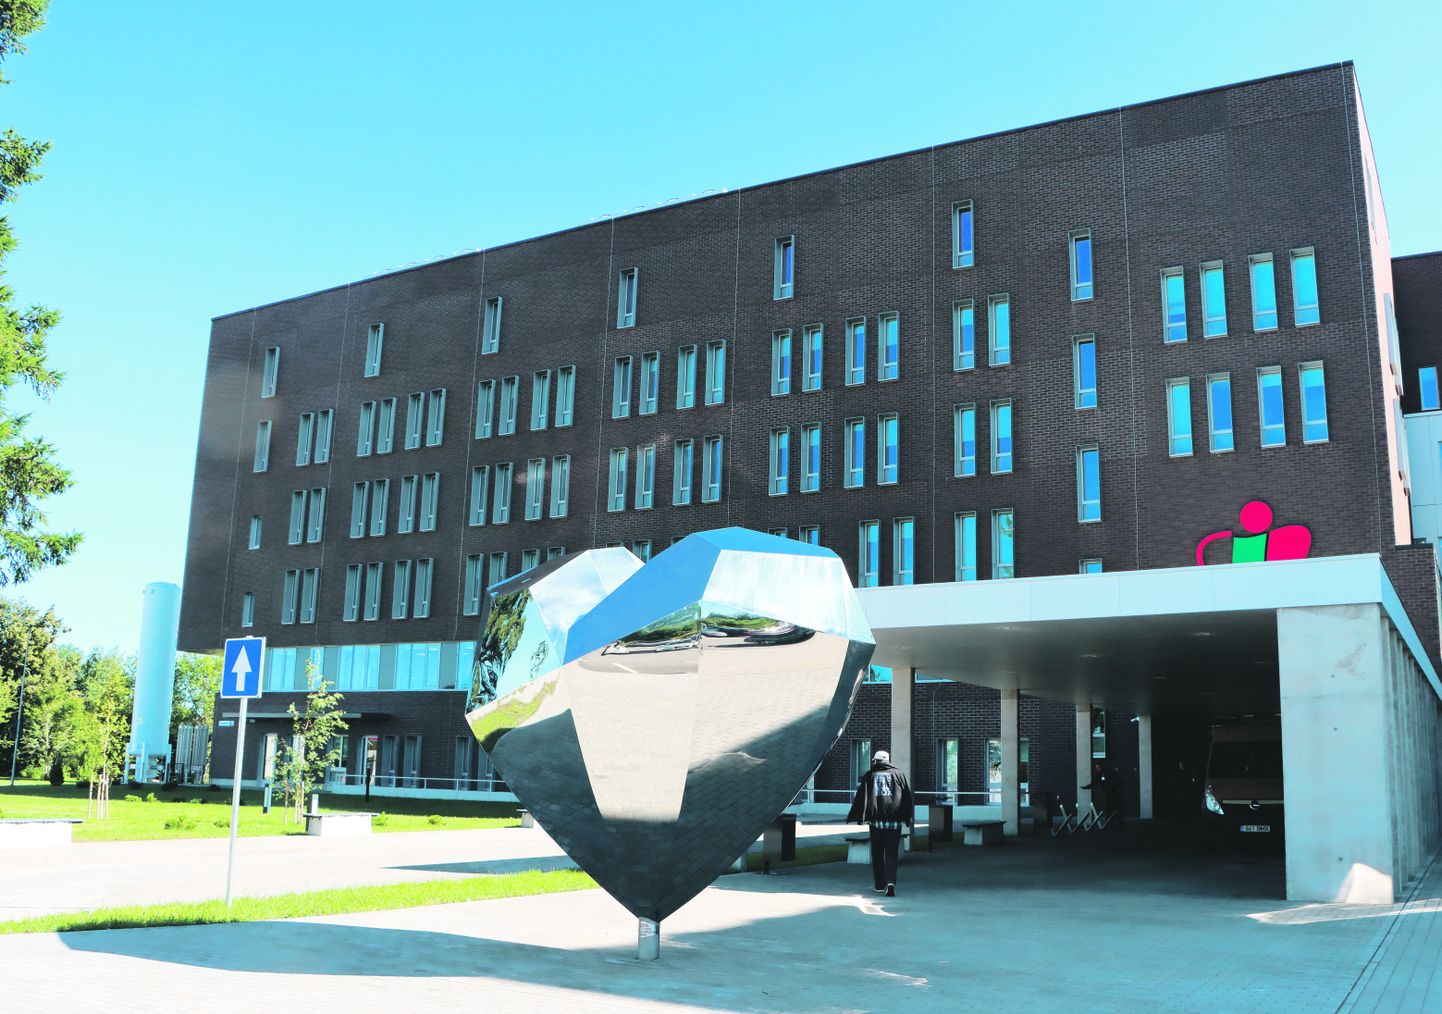 Ida-Viru keskhaigla uue korpuse ees on haigla logo kujuline suur metallist süda.